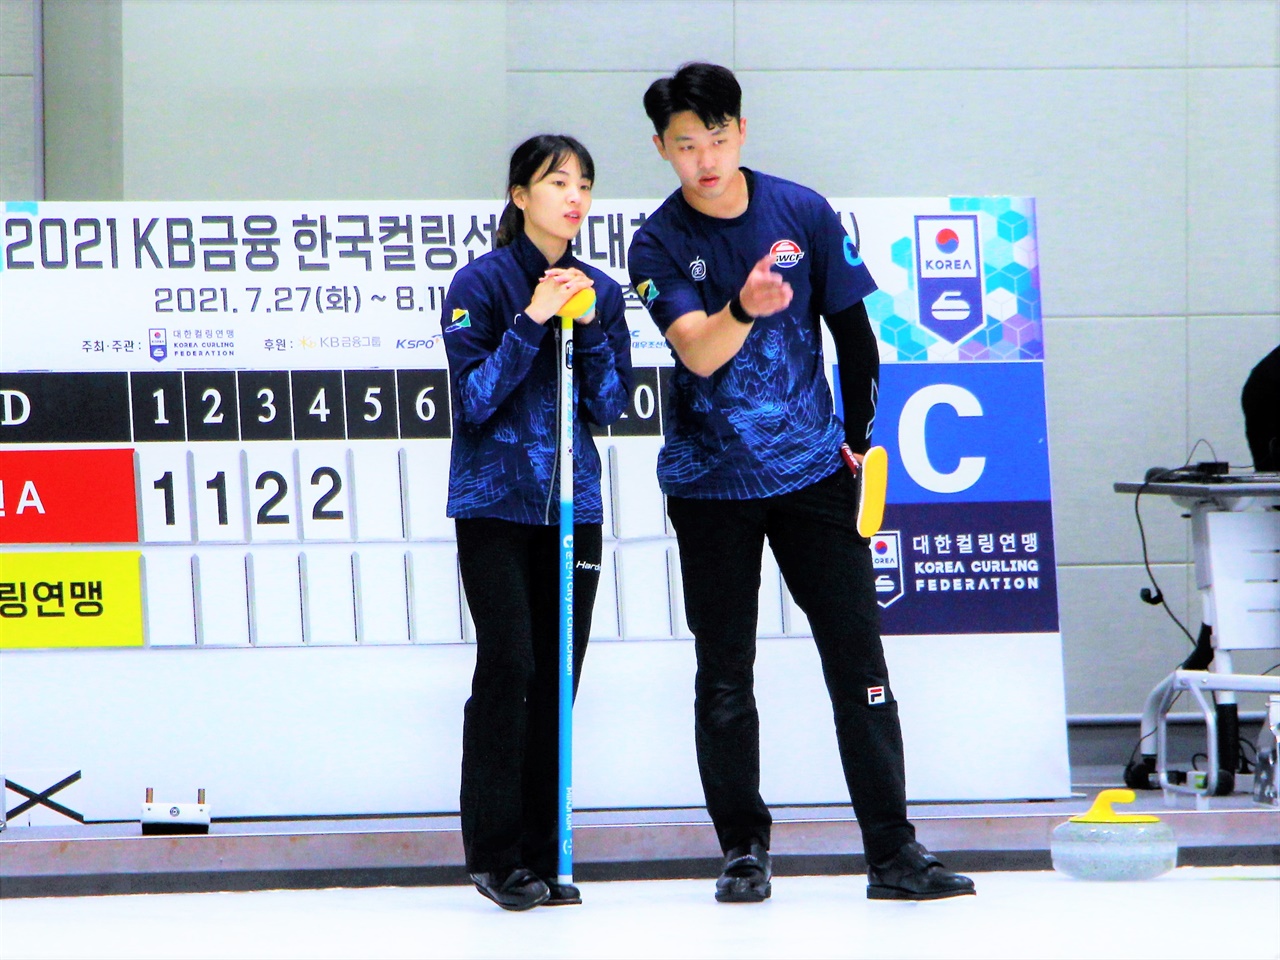  2021 KB금융 한국컬링선수권대회 믹스더블 국가대표 선발전에서 경기를 펼치는 김민지 선수와 이기정 선수.